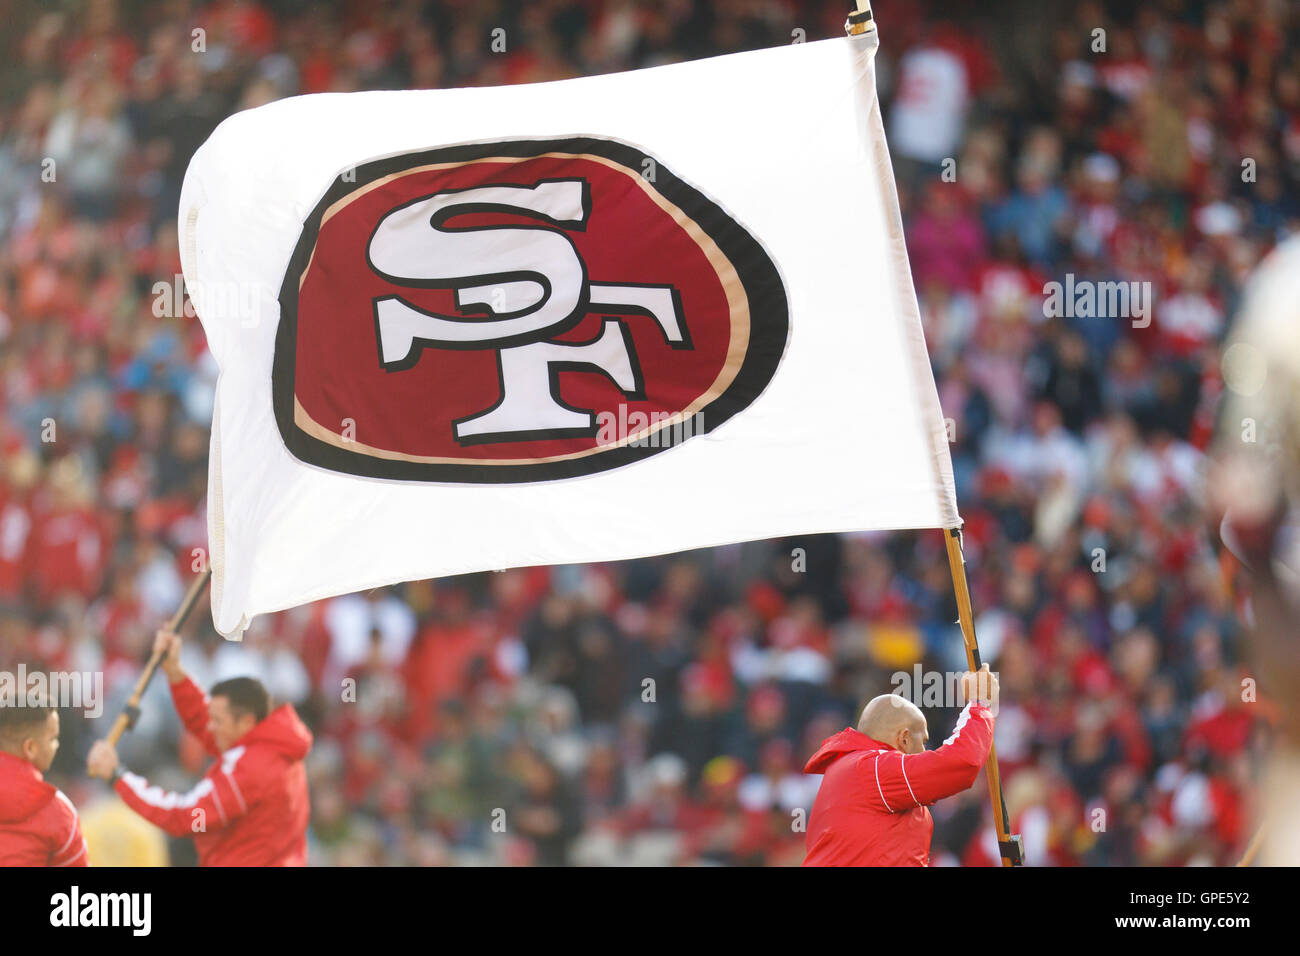 Nov 20, 2011 ; San Francisco, CA, USA ; un San Francisco 49ers drapeau est agité sur le terrain après un toucher des roues a été marqué contre l'Arizona Cardinals au cours du troisième trimestre au candlestick park. Banque D'Images